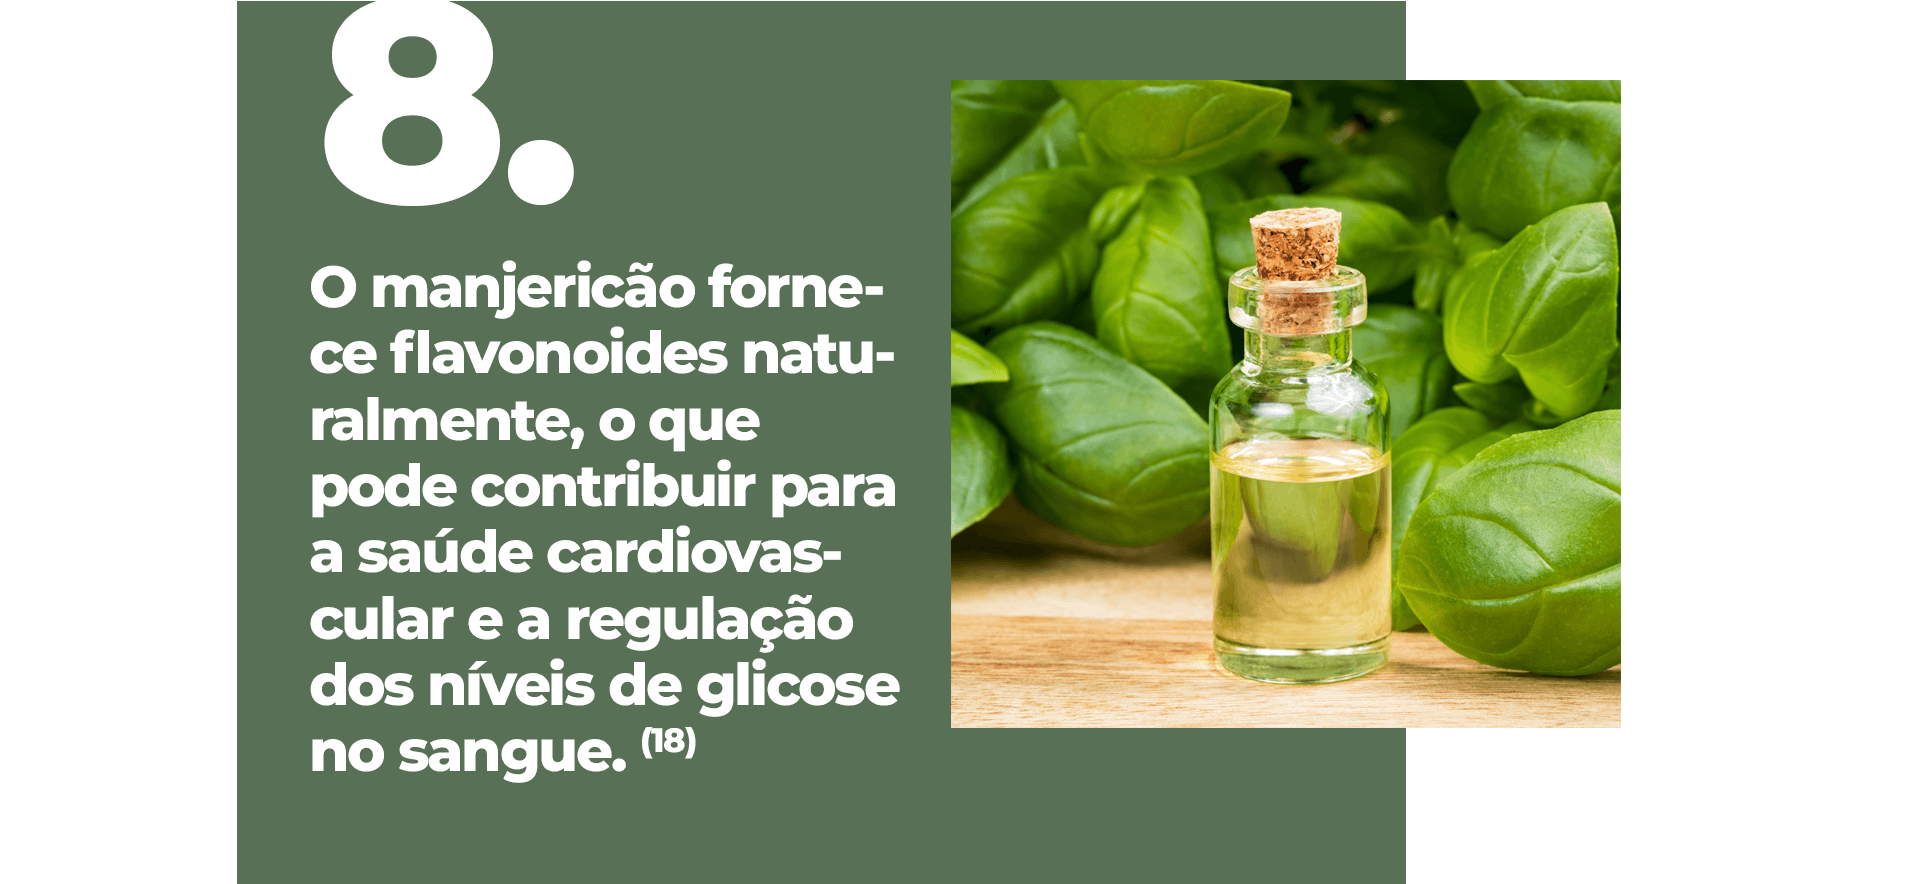 O manjericão fornece flavonoides naturalmente, o que pode contribuir para a saúde cardiovascular e a regulação dos níveis de glicose no sangue. (18)